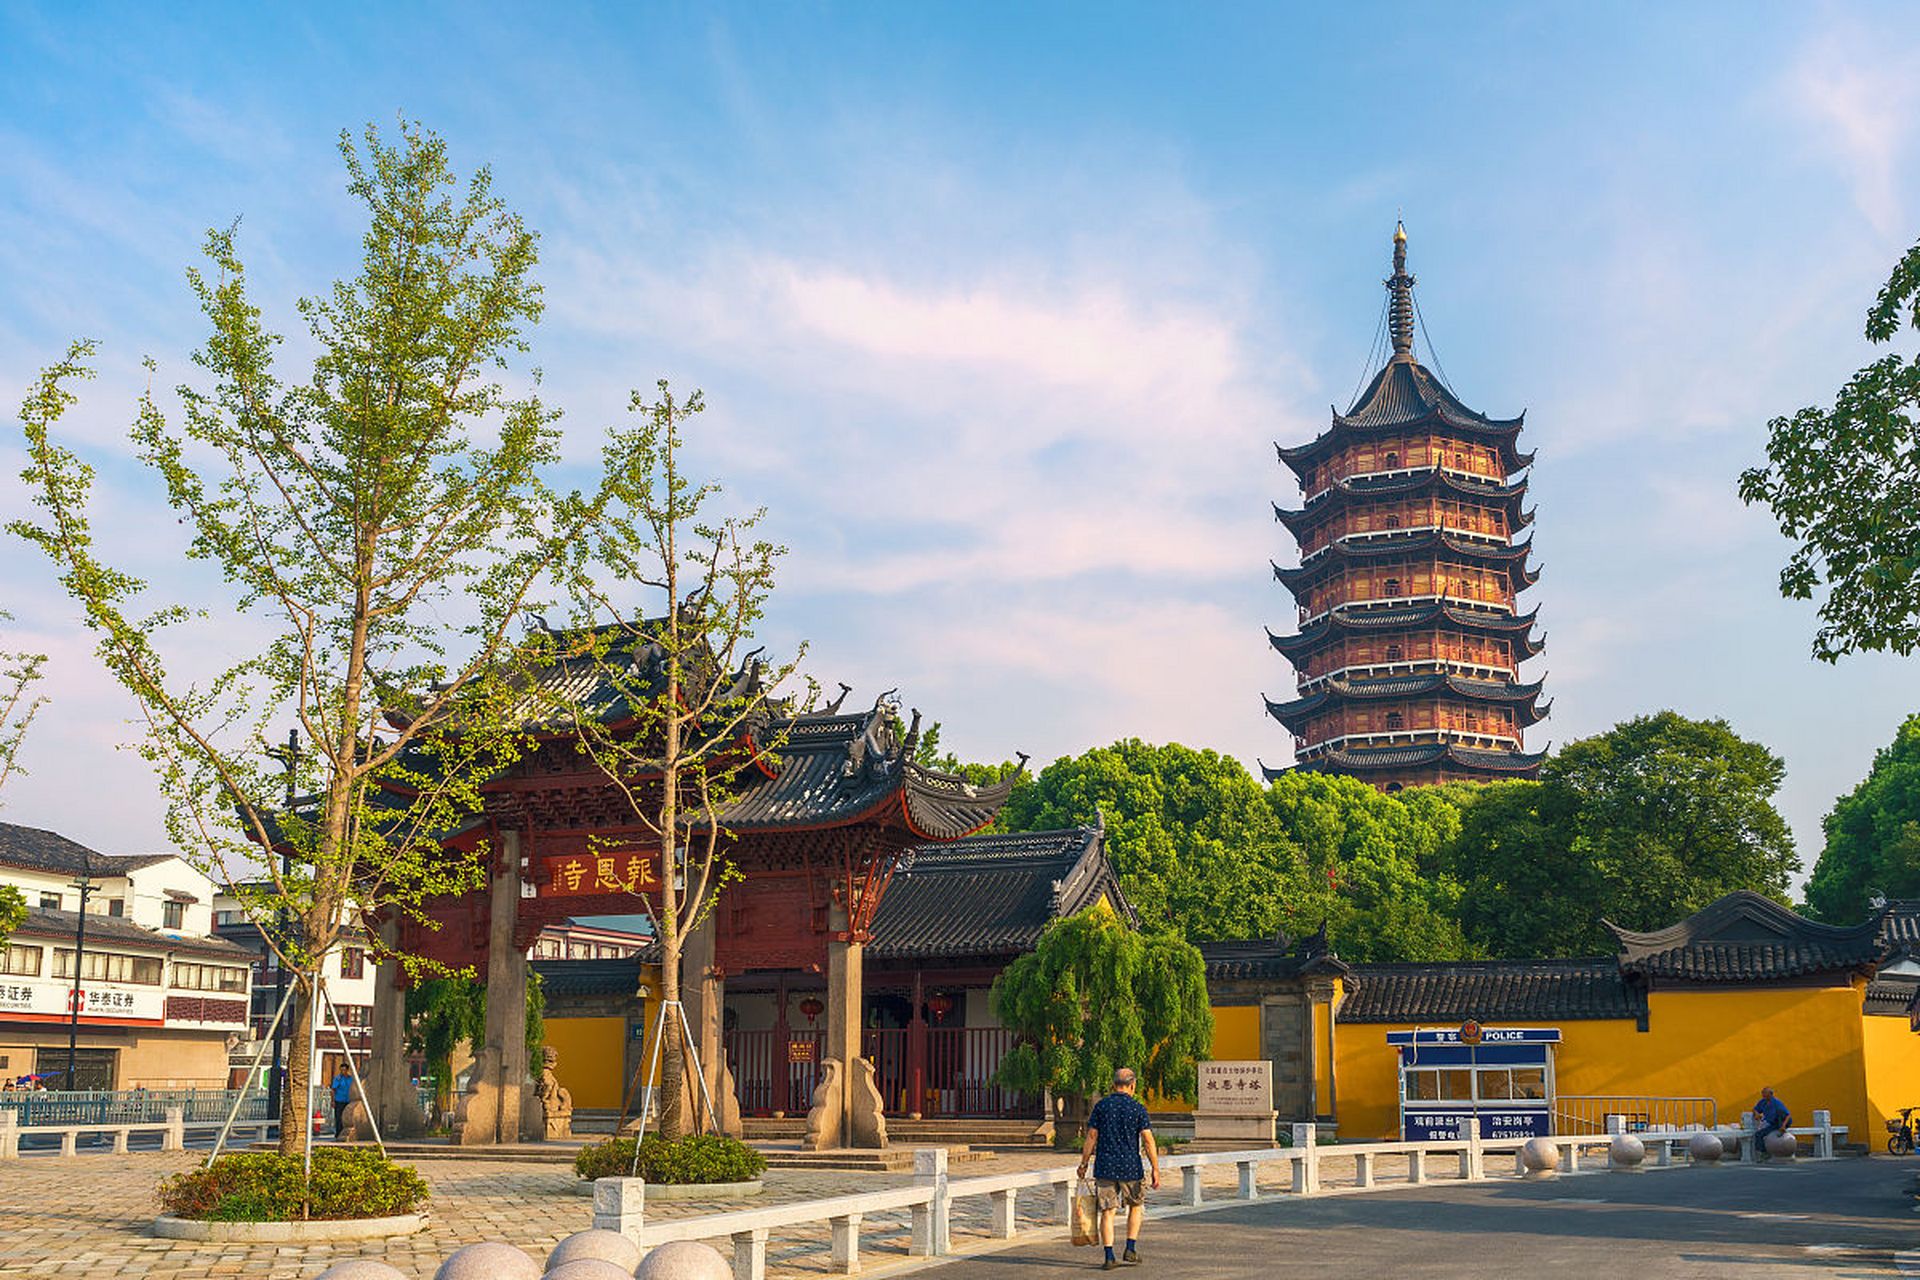 常州旅游必去十大景点推荐理由 常州,这座位于江苏省的城市,有着丰富